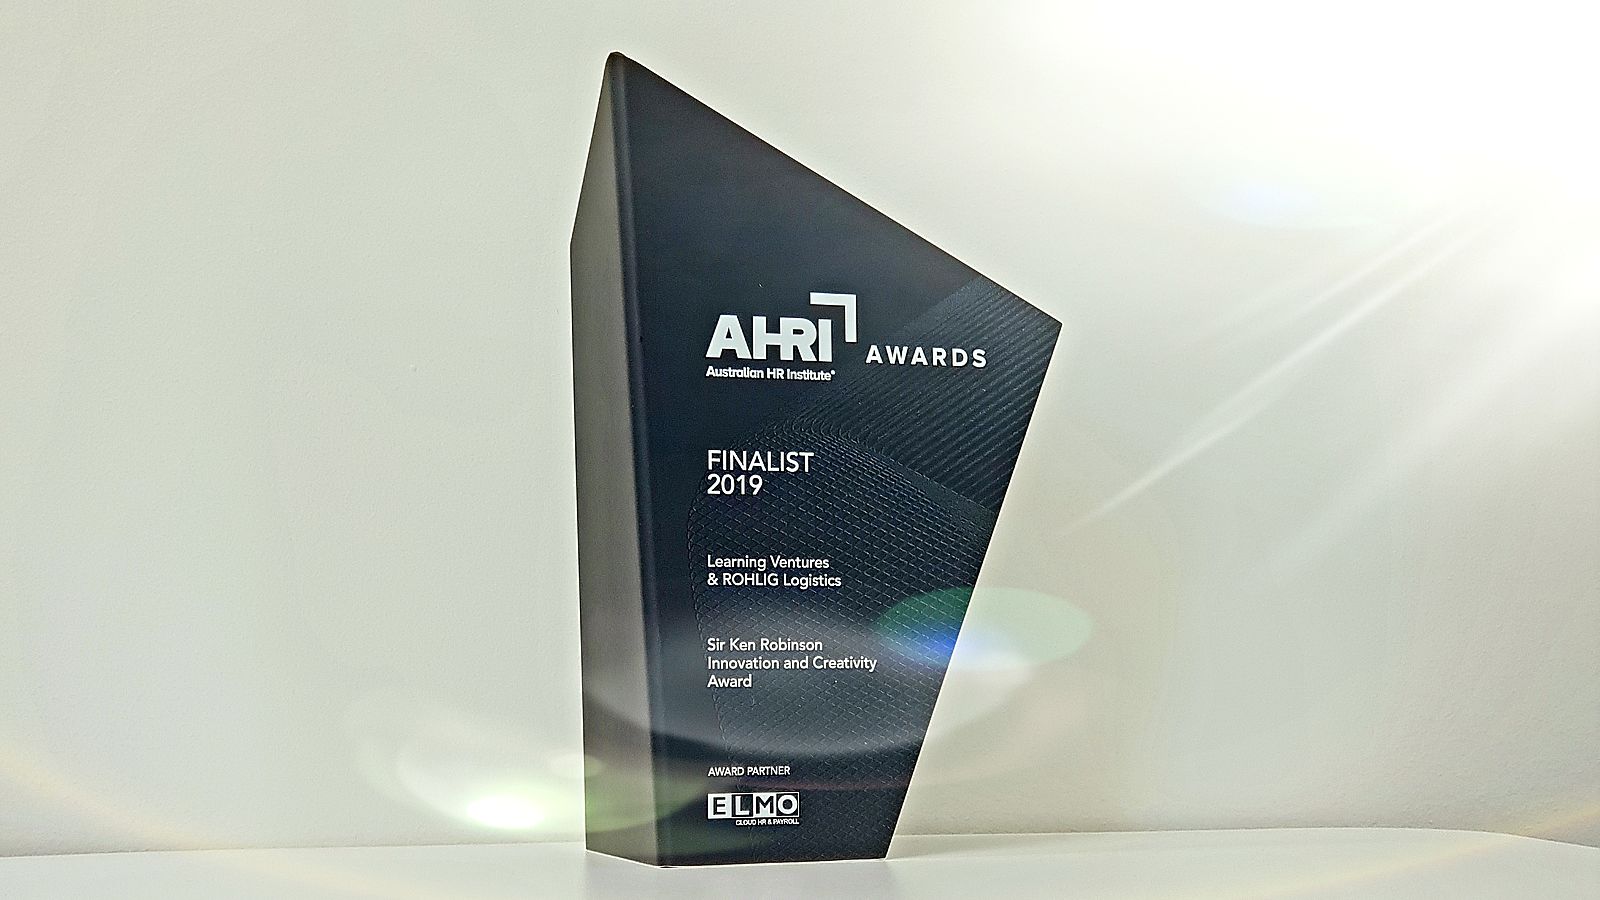 Röhlig Australia receives the Sir Ken Robinson Innovation and Creativity Award 